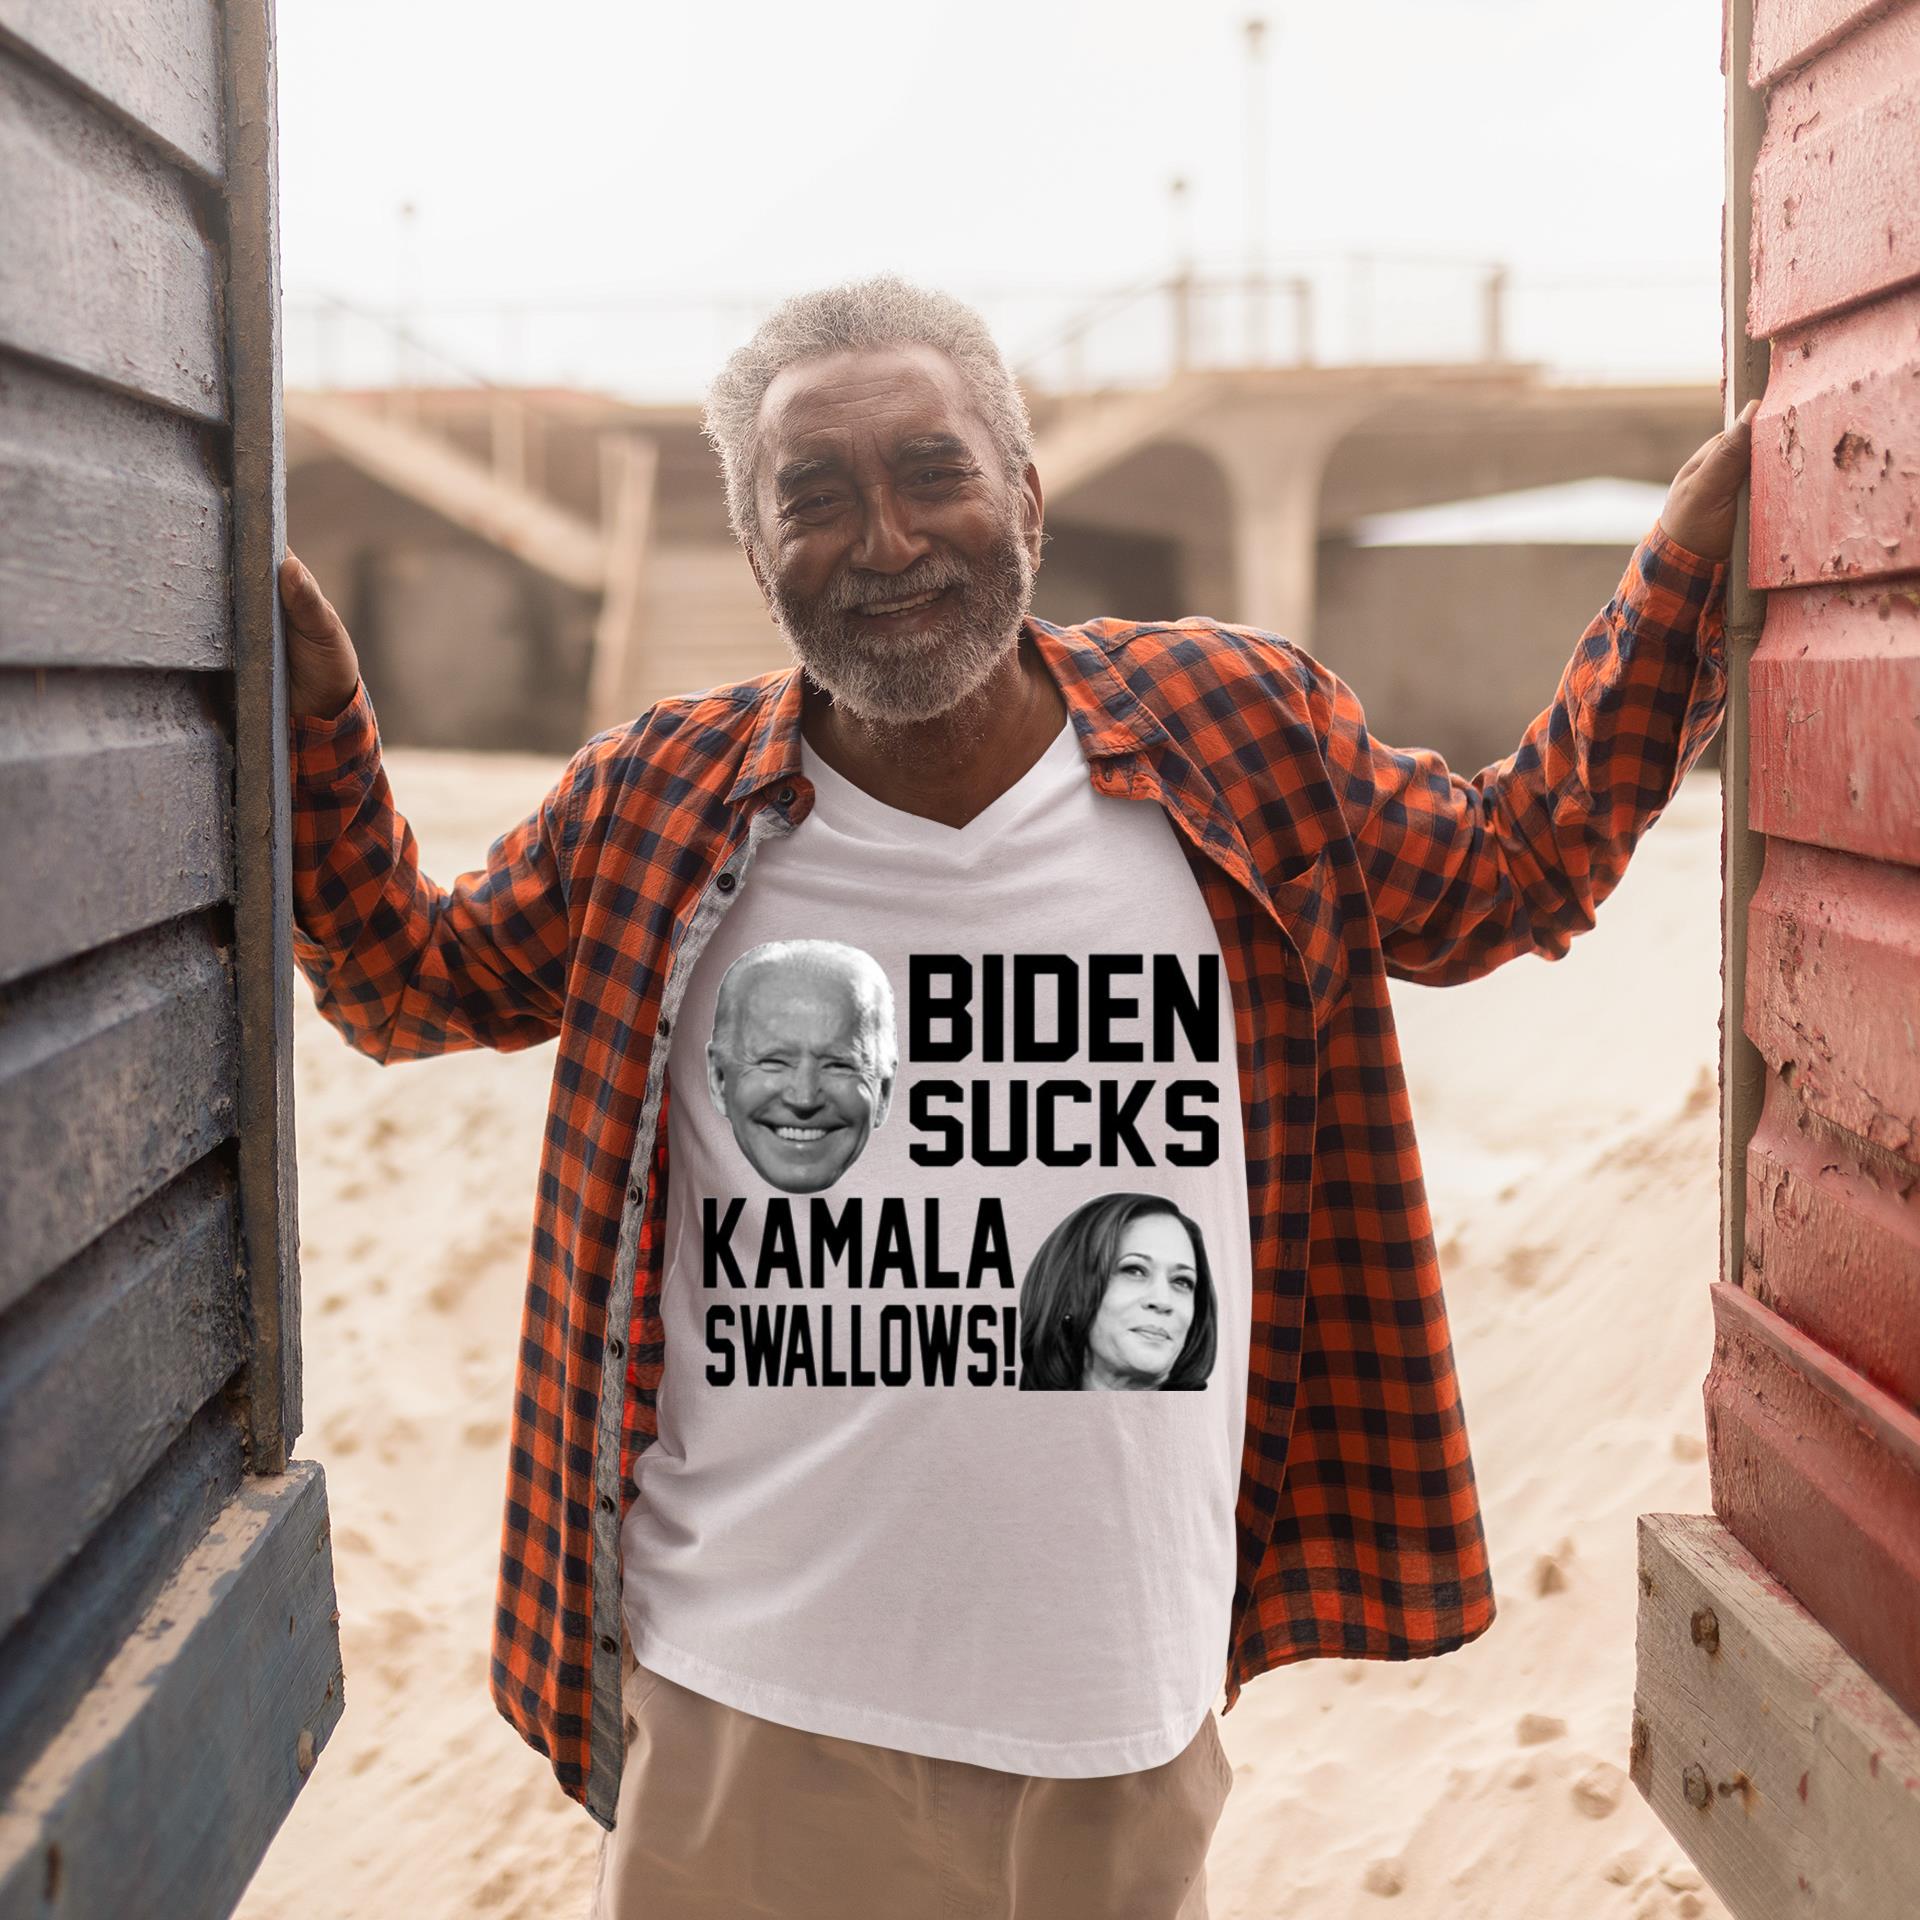 Kamala swallows Biden sucks shirt 4